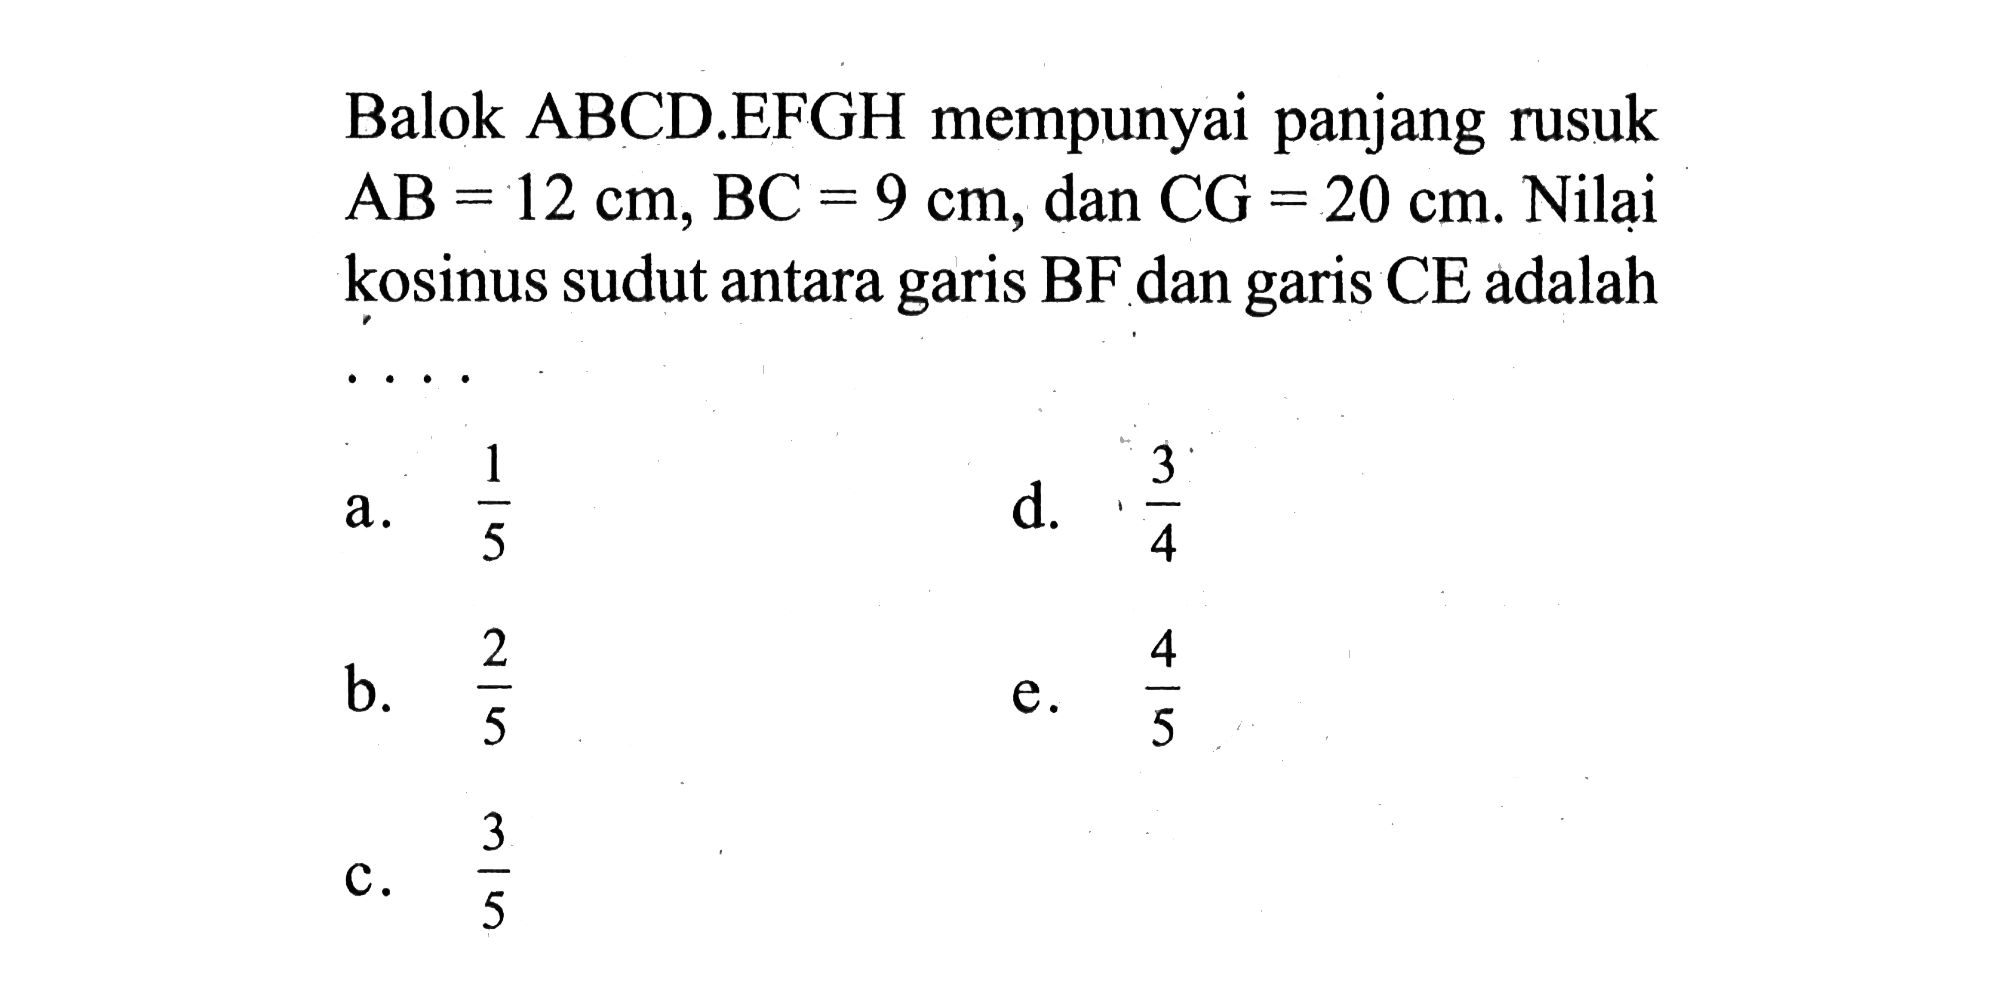 Balok ABCD.EFGH mempunyai panjang rusuk AB=12 cm, BC=9 cm, dan CG=20 cm. Nilai kosinus sudut antara garis BF dan garis CE adalah....  